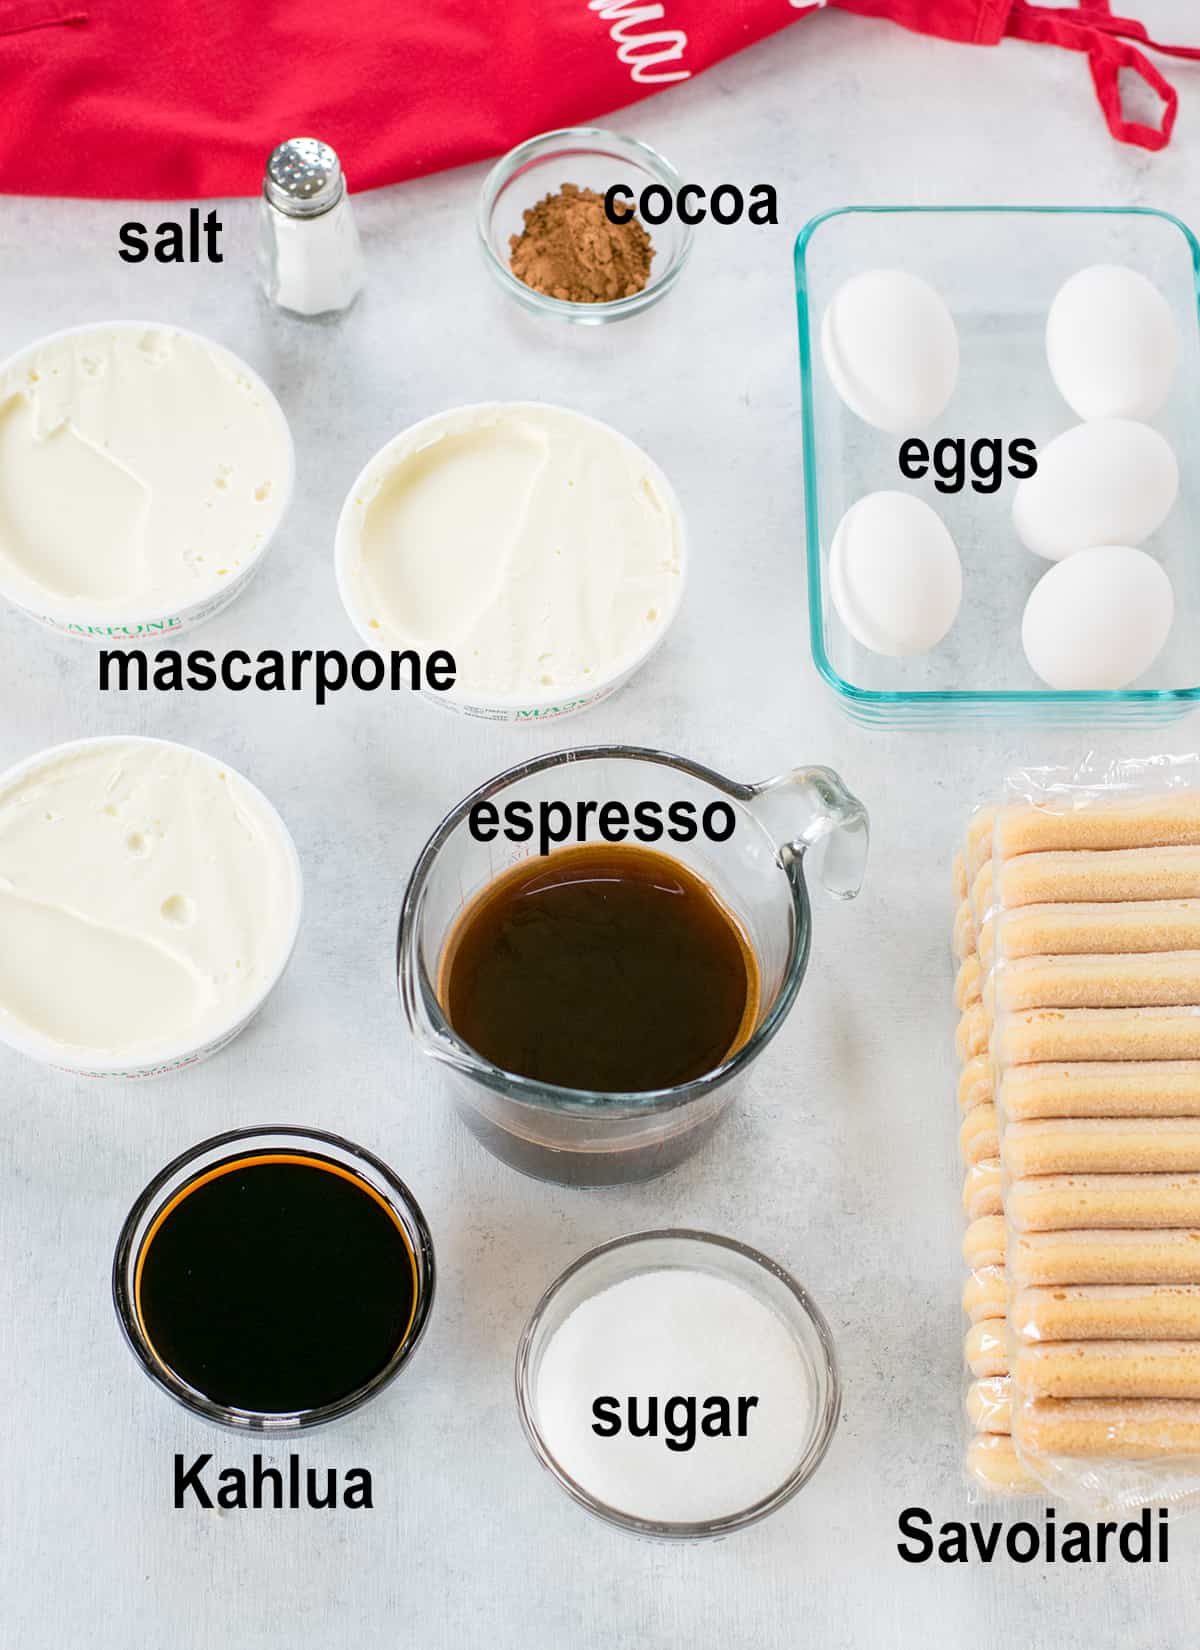 eggs, mascarpone, coffee, liqueur, cocoa, cookies, sugar, salt